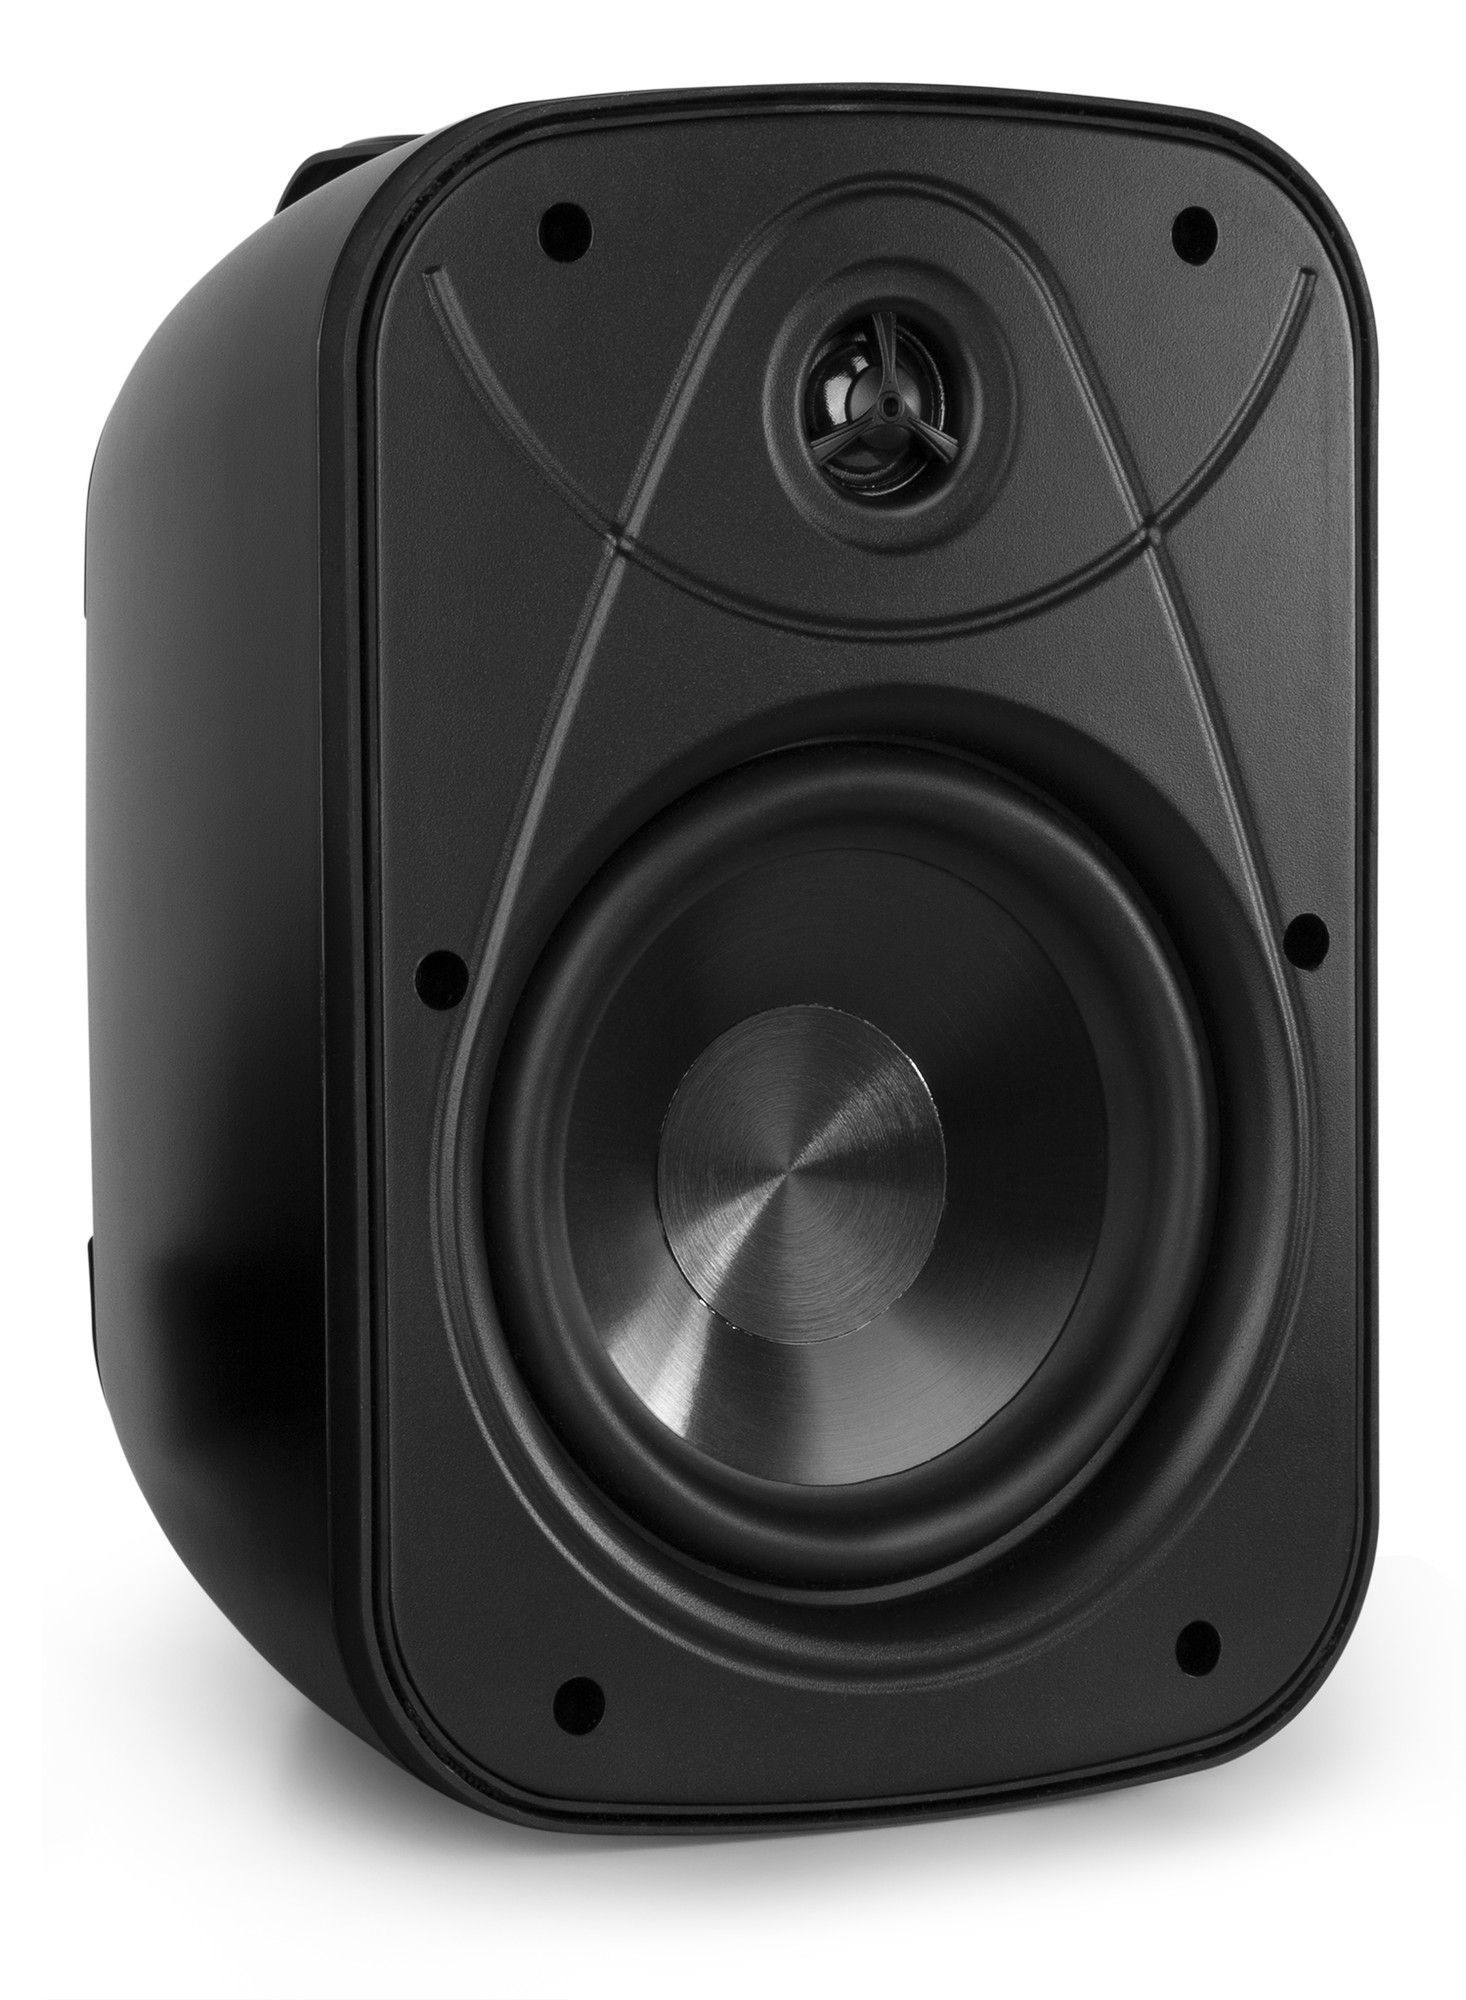 N. V. T. Retourdeals installatie speakers